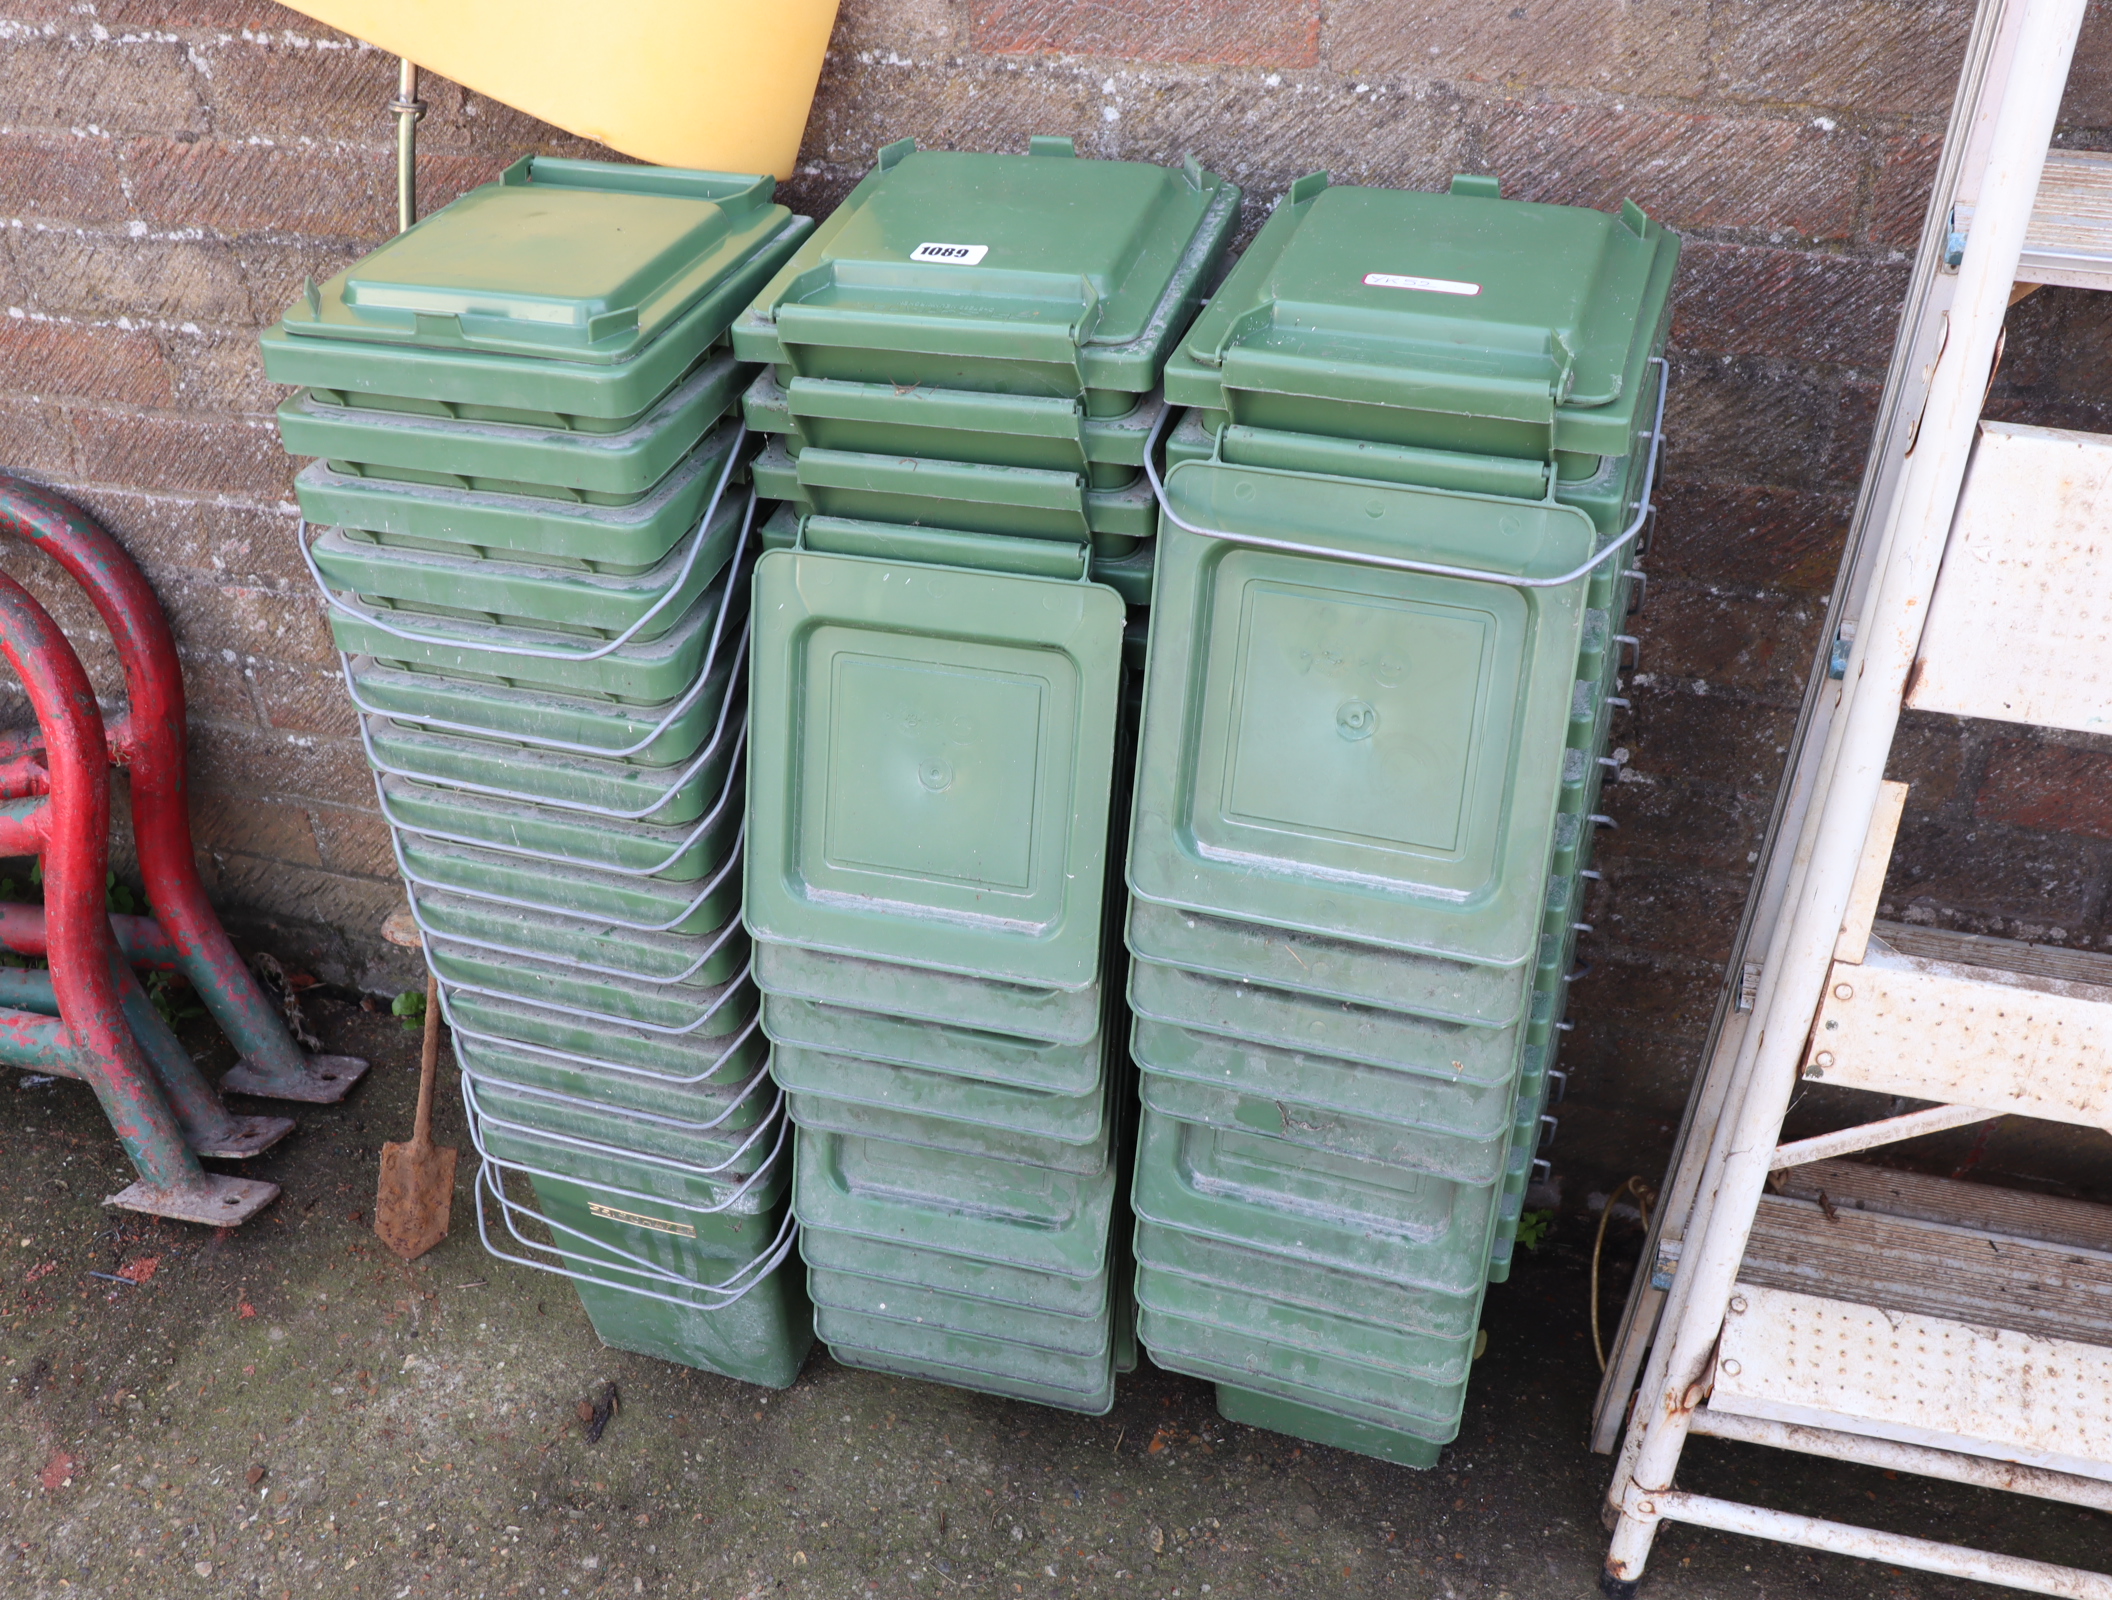 Approx. 45 Schafer green plastic storage bins